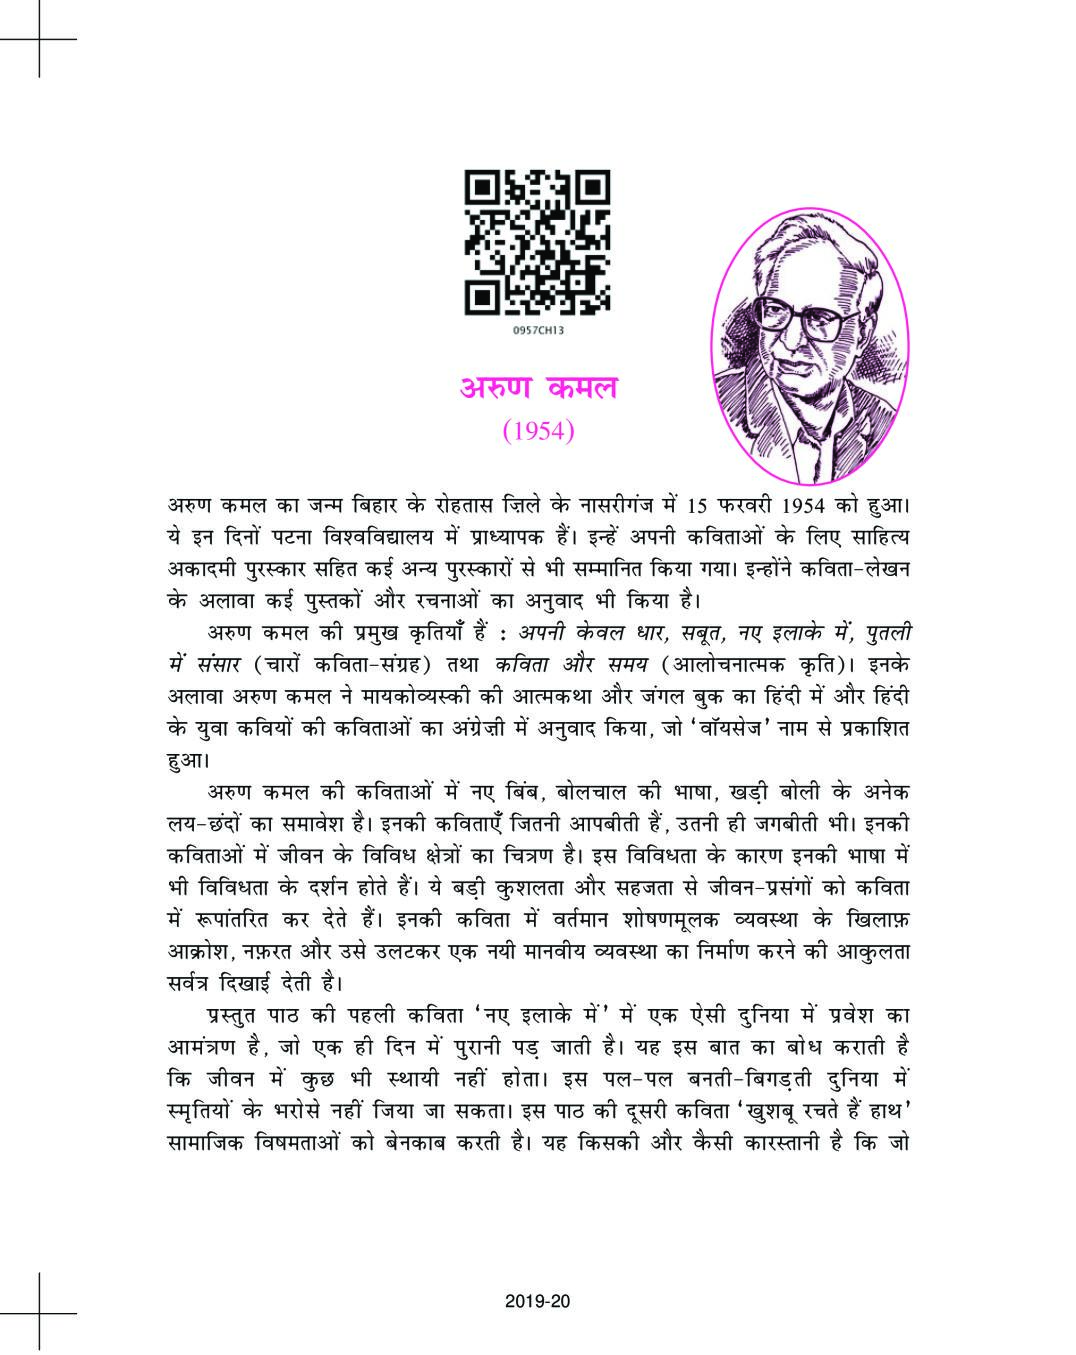 NCERT Book Class 9 Hindi (स्पर्श) Chapter 13 नए इलाके में… / खुशबू रचते हैं हाथ… - Page 1